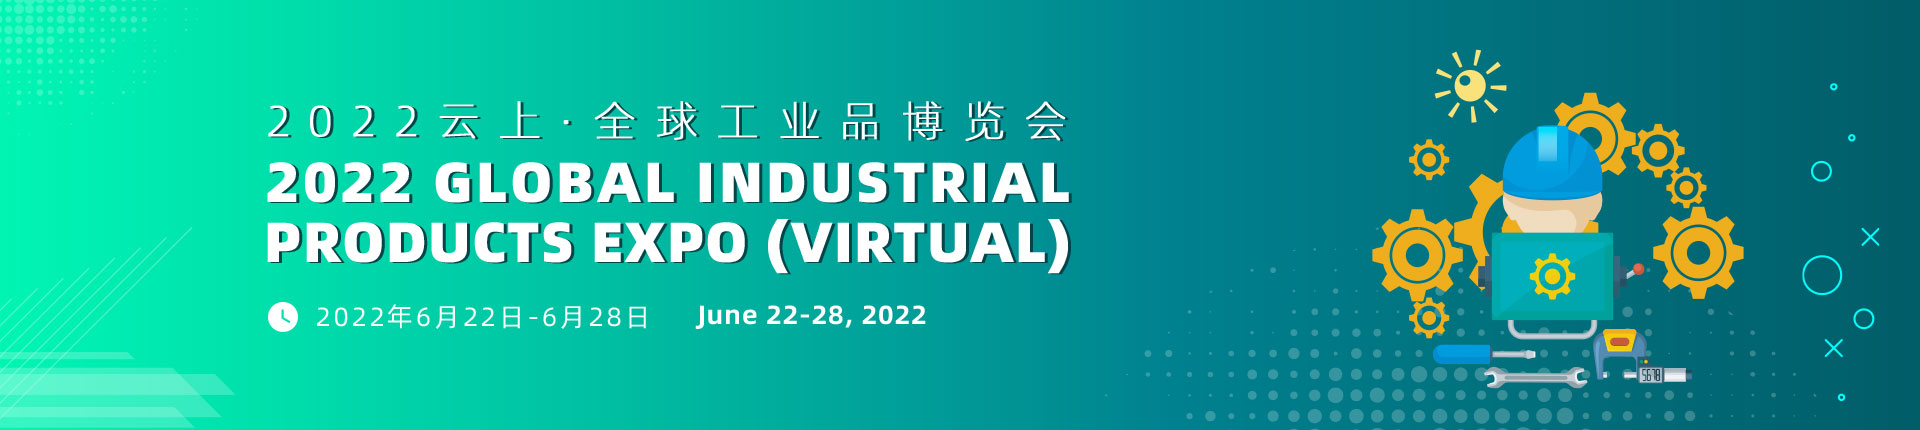 2022云上·全球工业品博览会